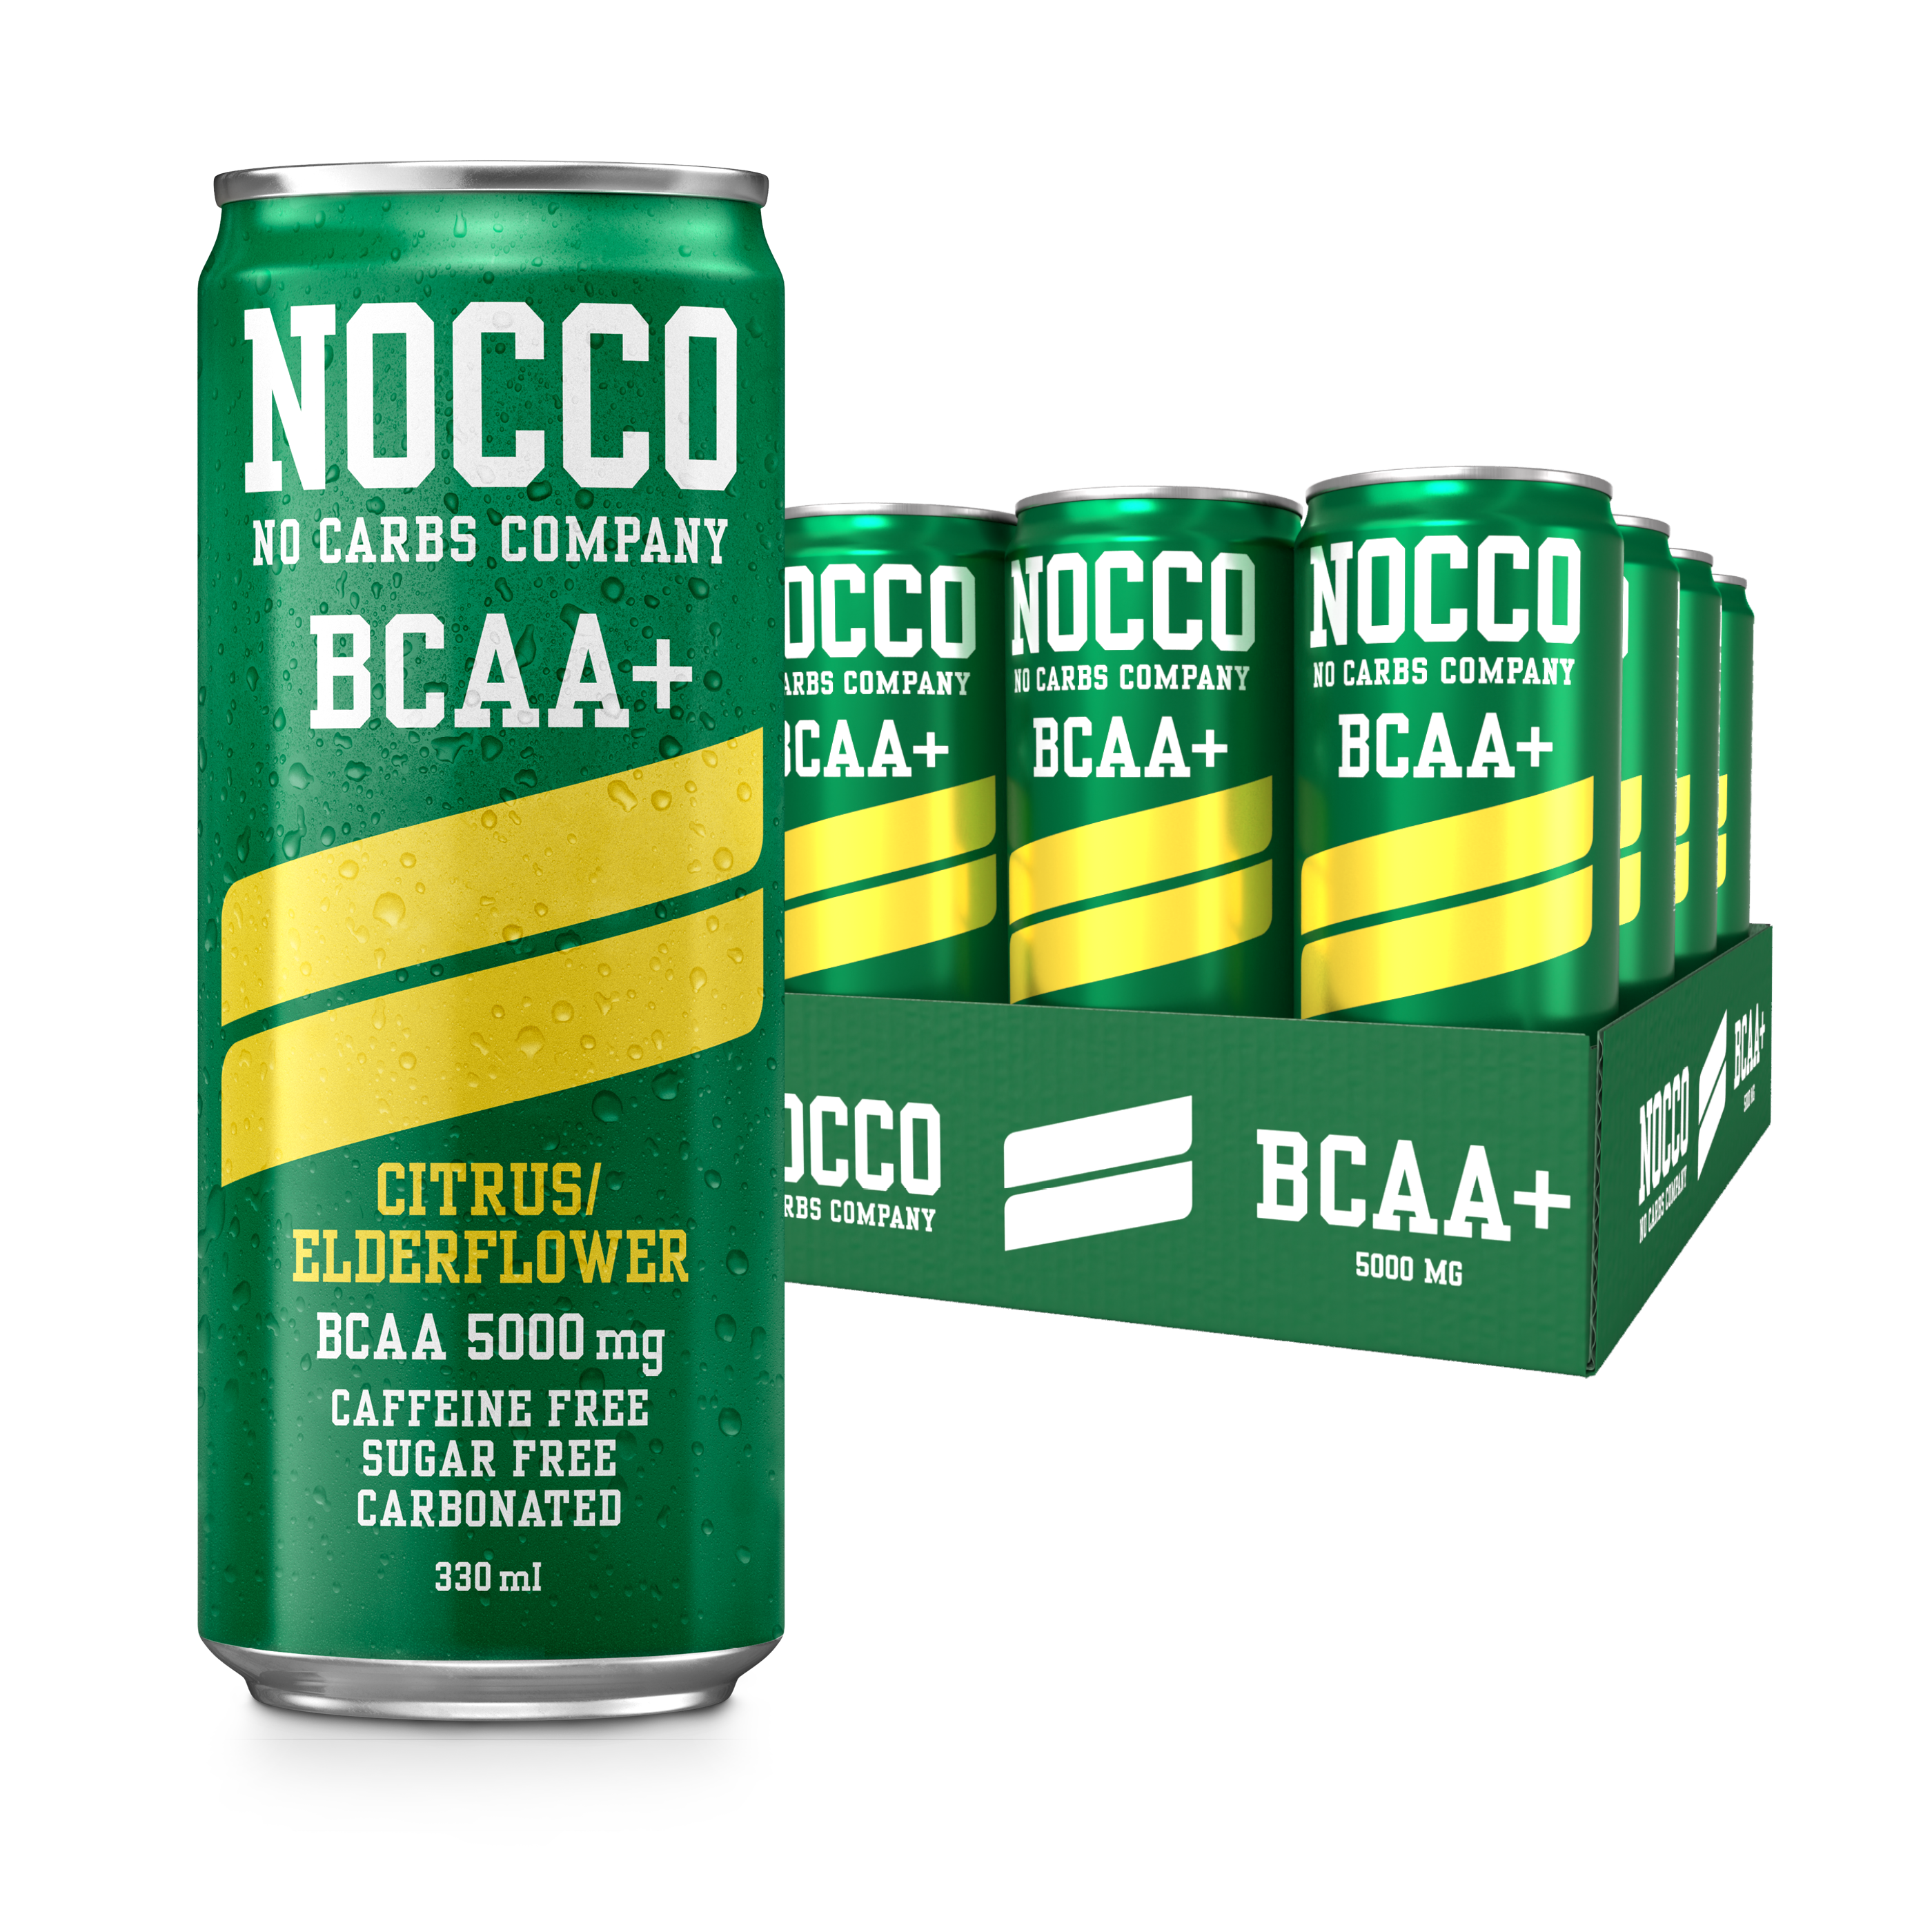 NOCCO Citrus/Elderflower - Caffeine Free